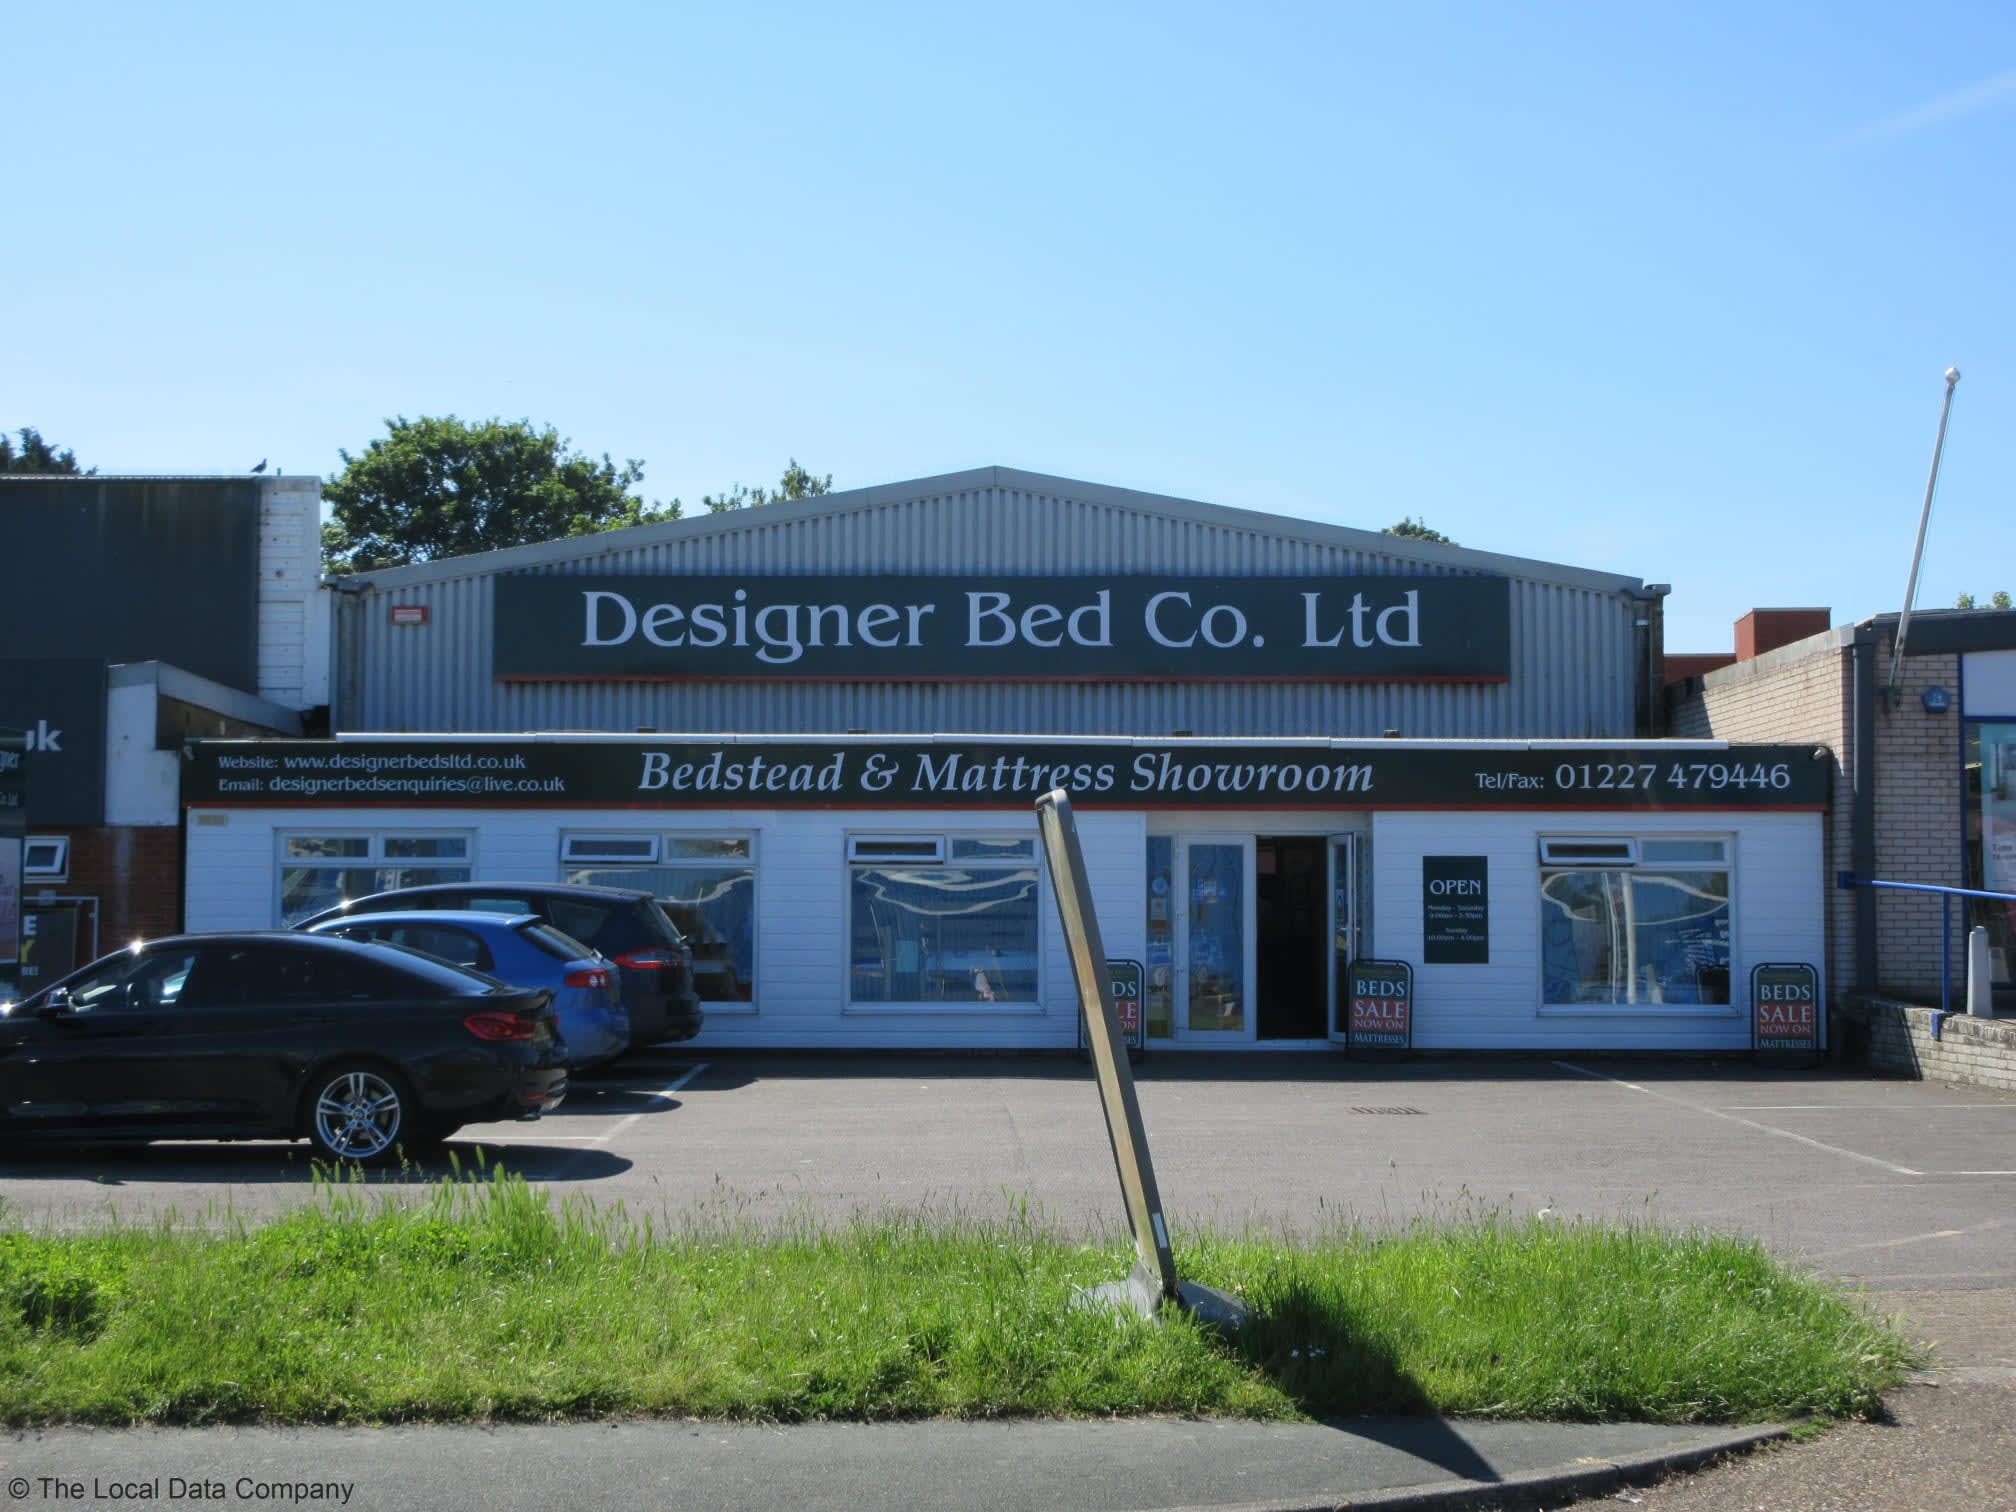 Images Designer Bed Co Ltd